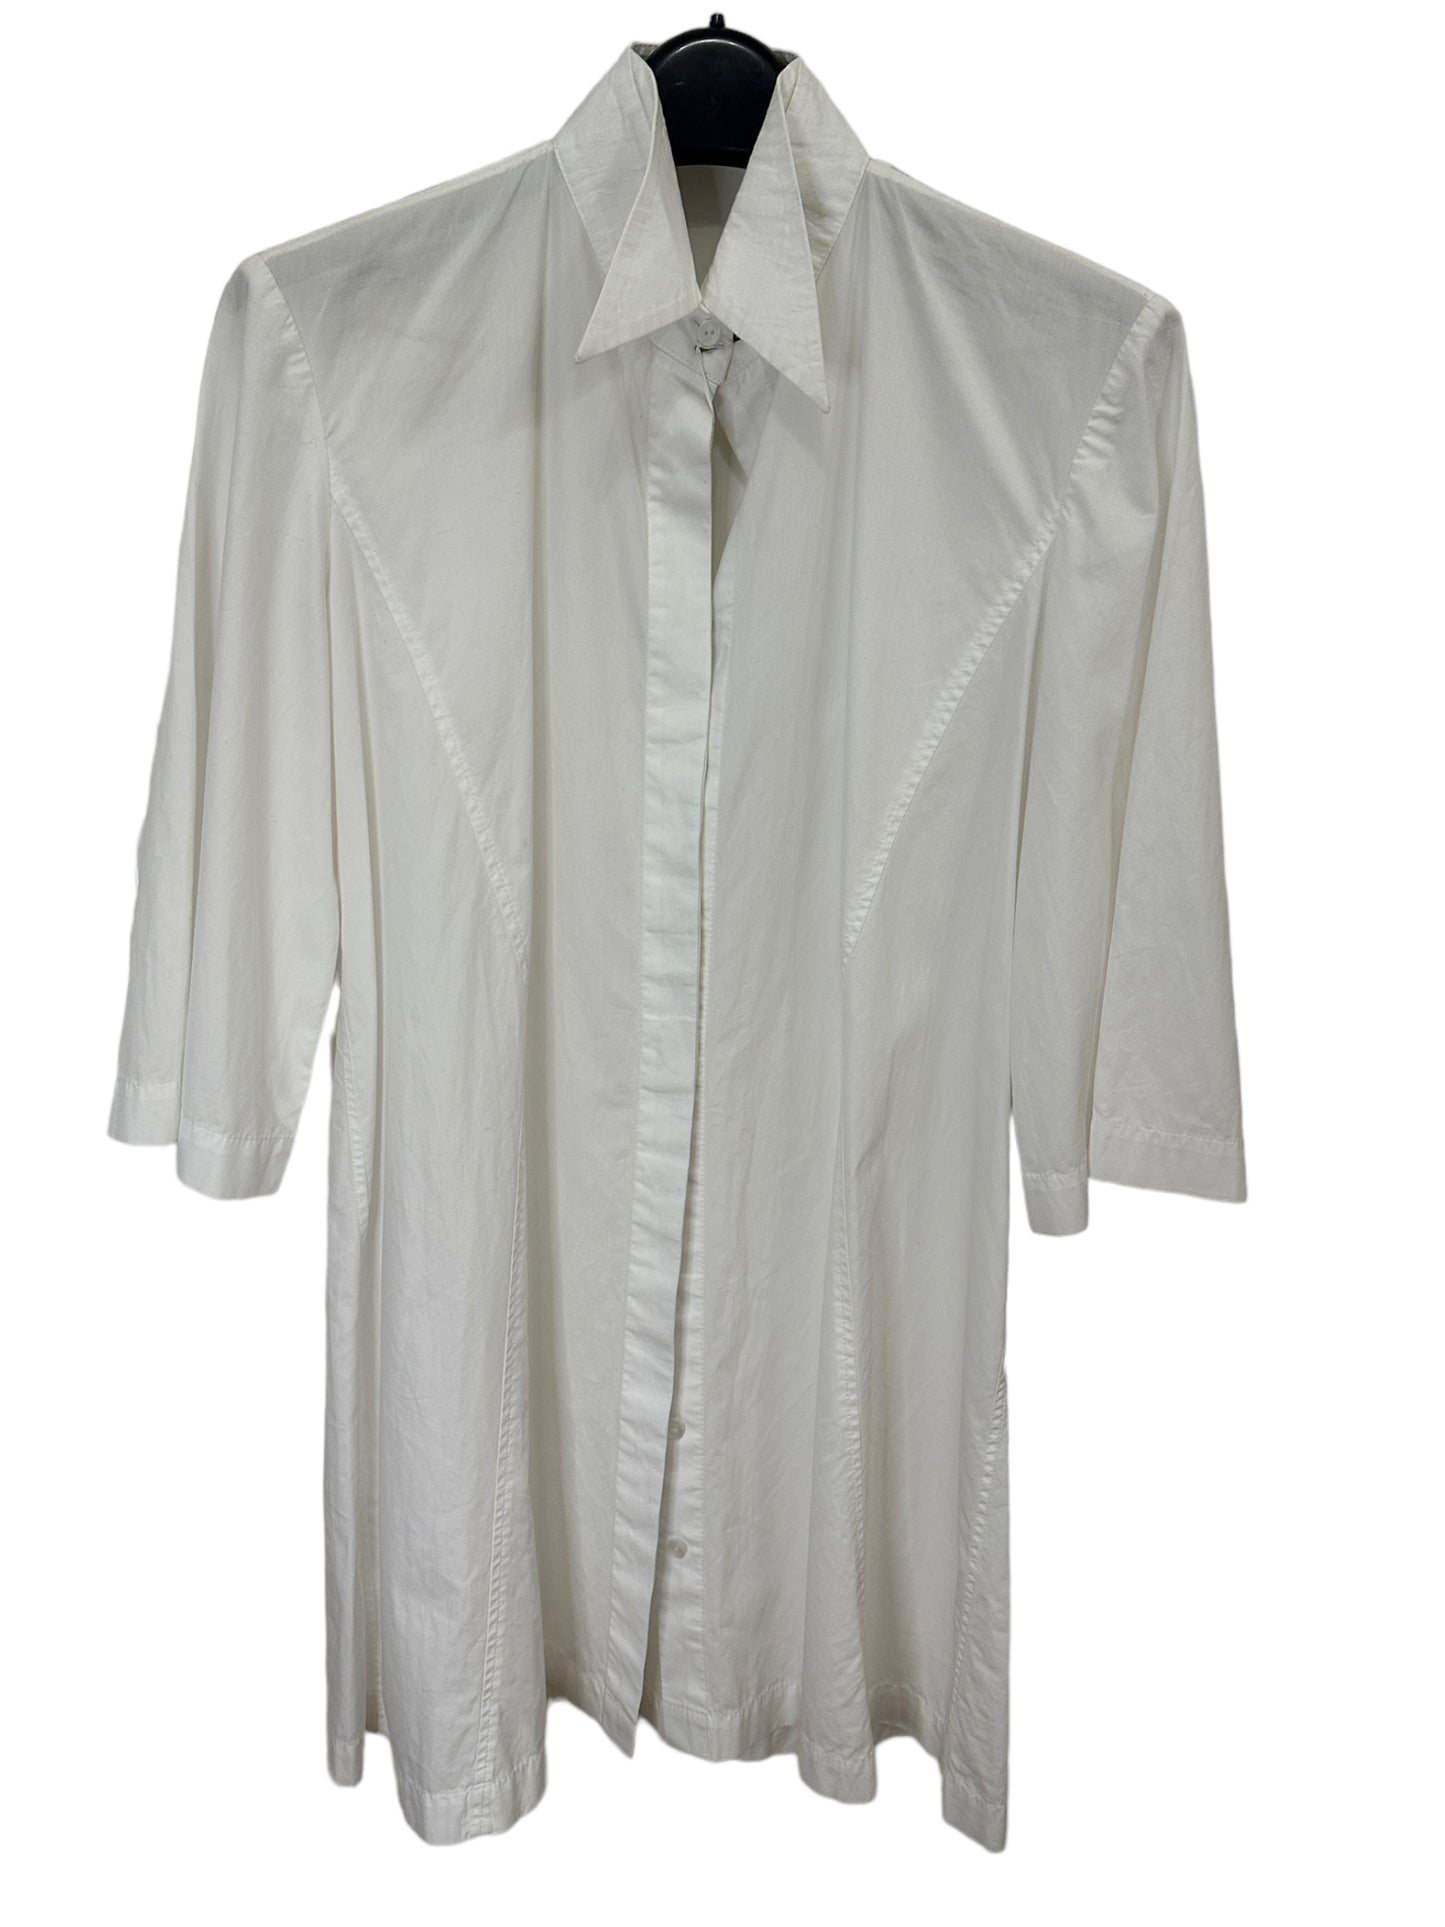 PRITCH LONDON Shirt Dress - Size UK8(US4)